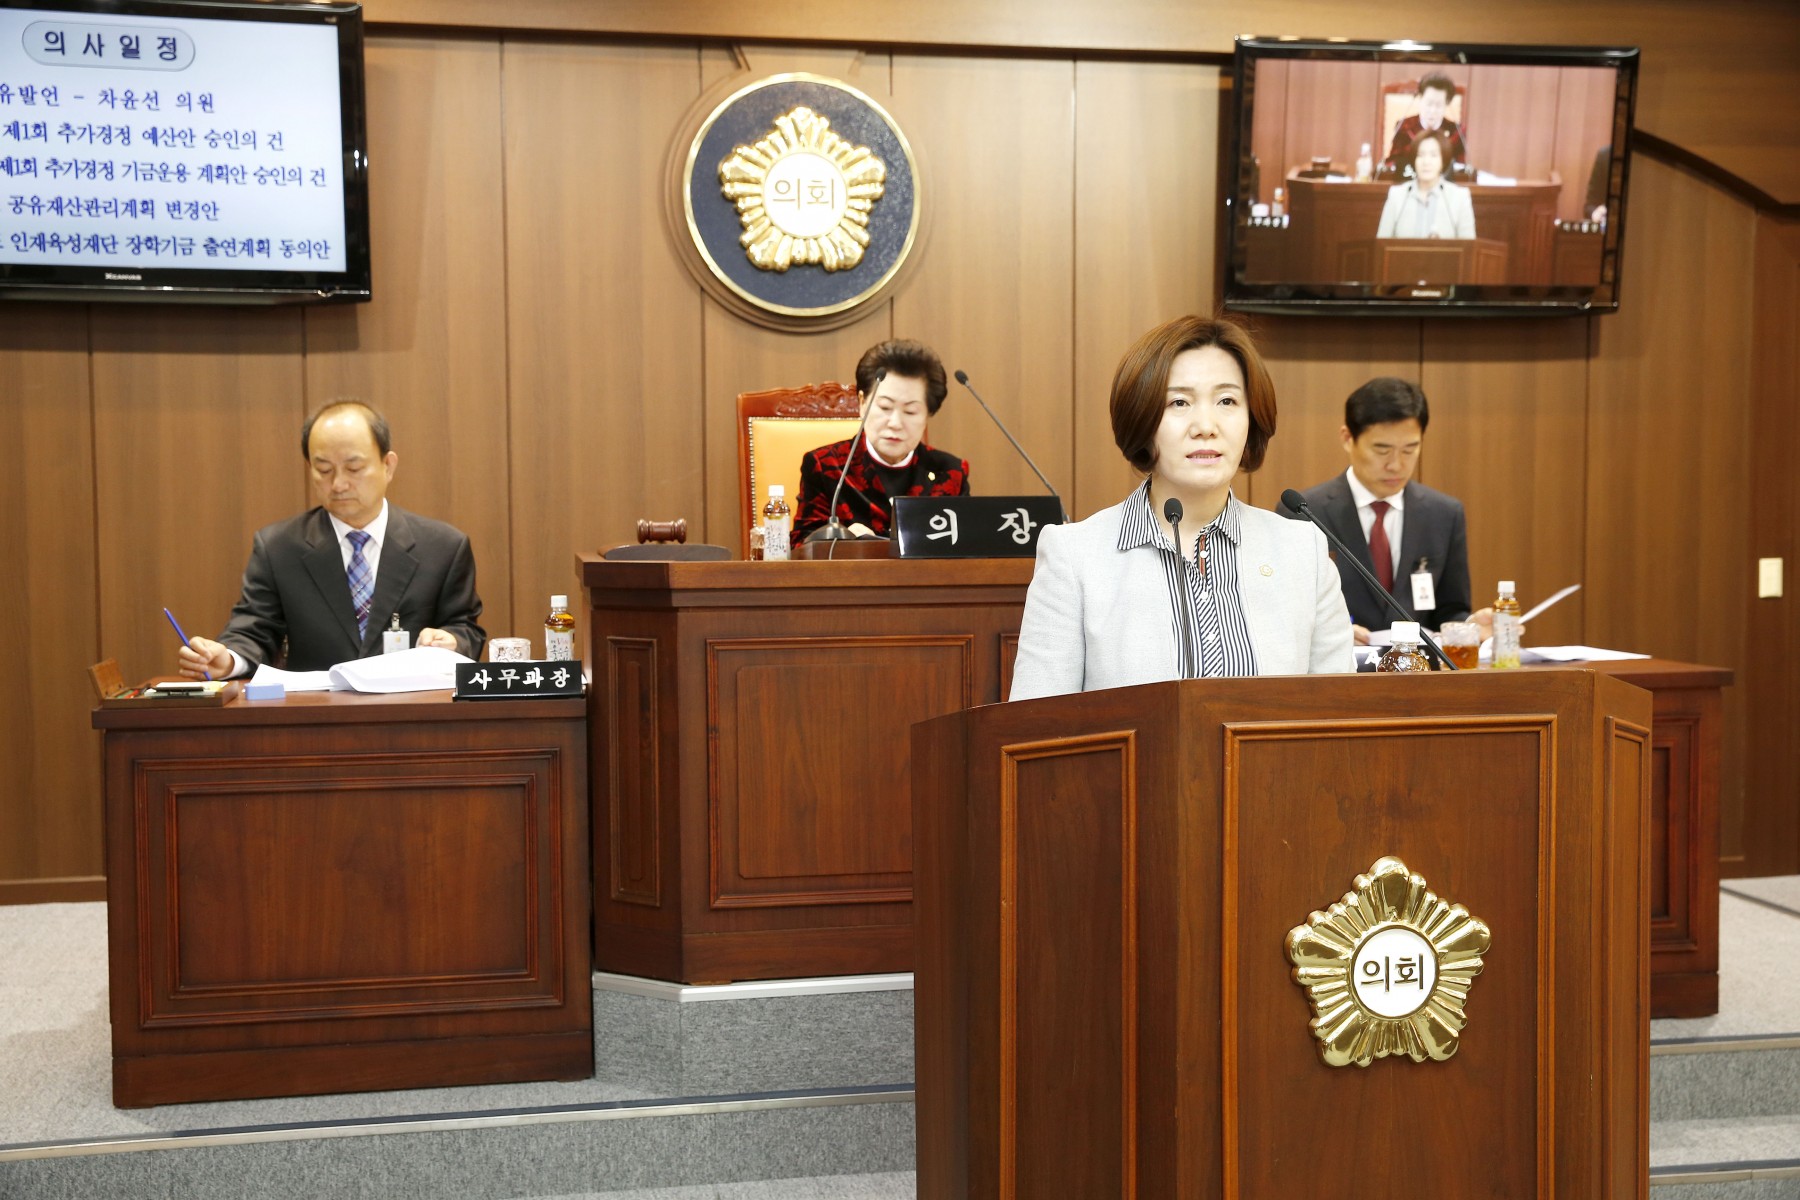 차윤선 의원, 한국서부발전과의 환경협정 재협정 필요성 발언